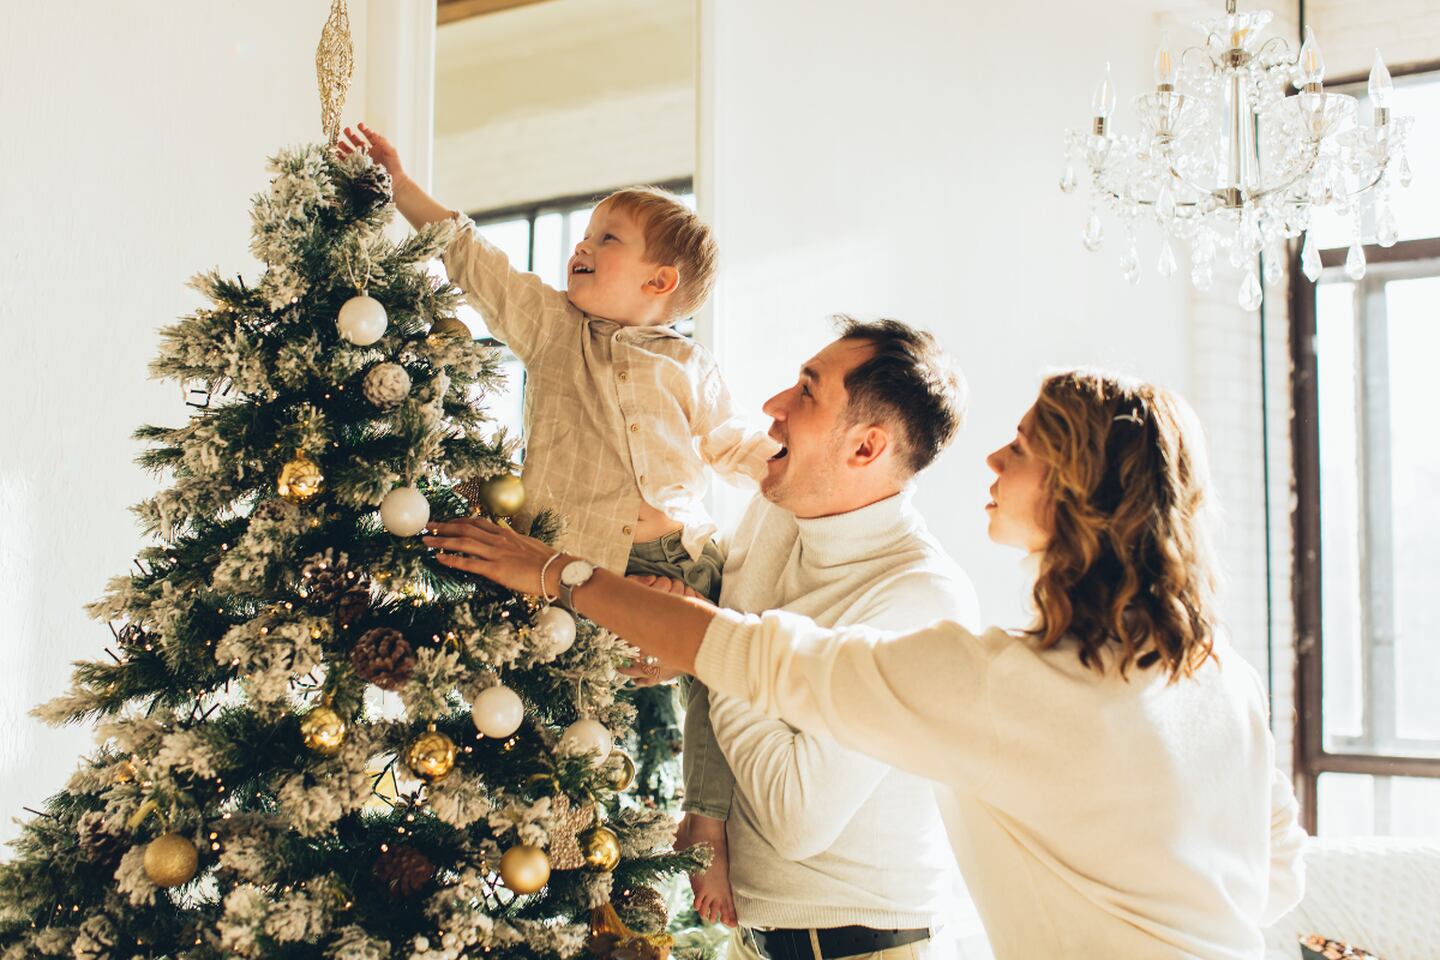 Familia decorando el árbol de Navidad mientras sonríen.